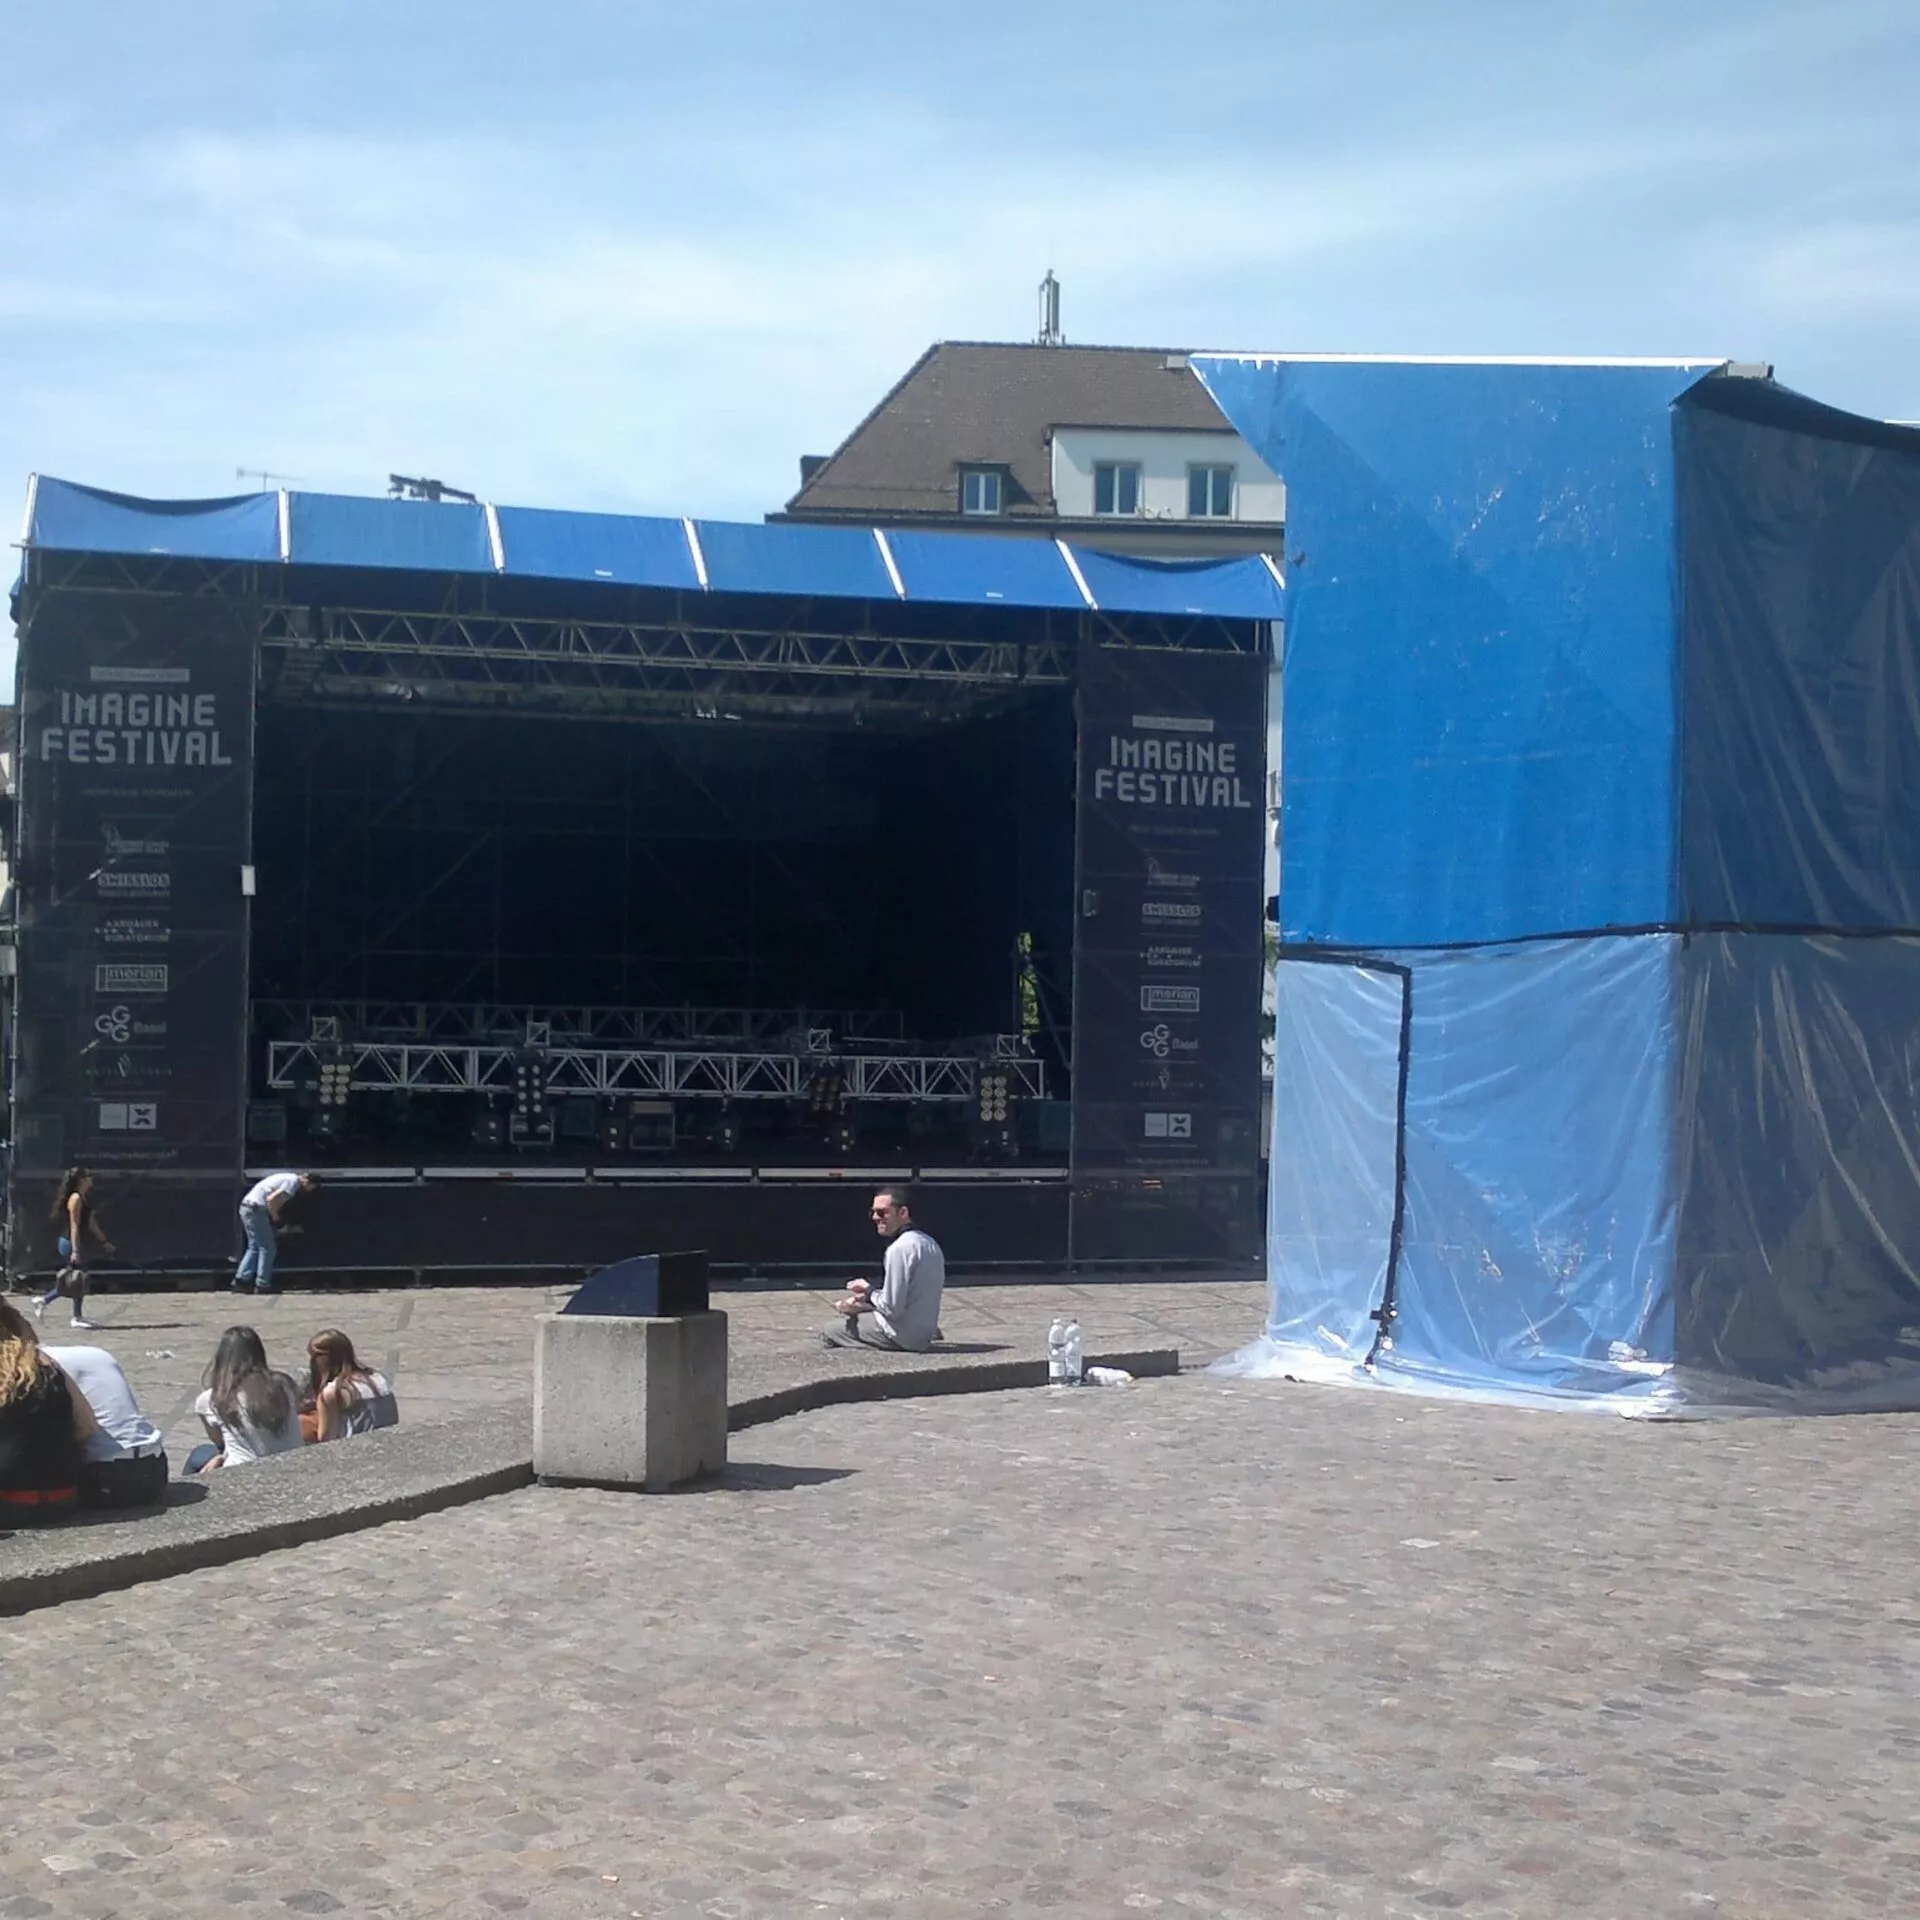 Die Bühne im Hintergrund des Platzes lässt ein grosses Fest erahnen.